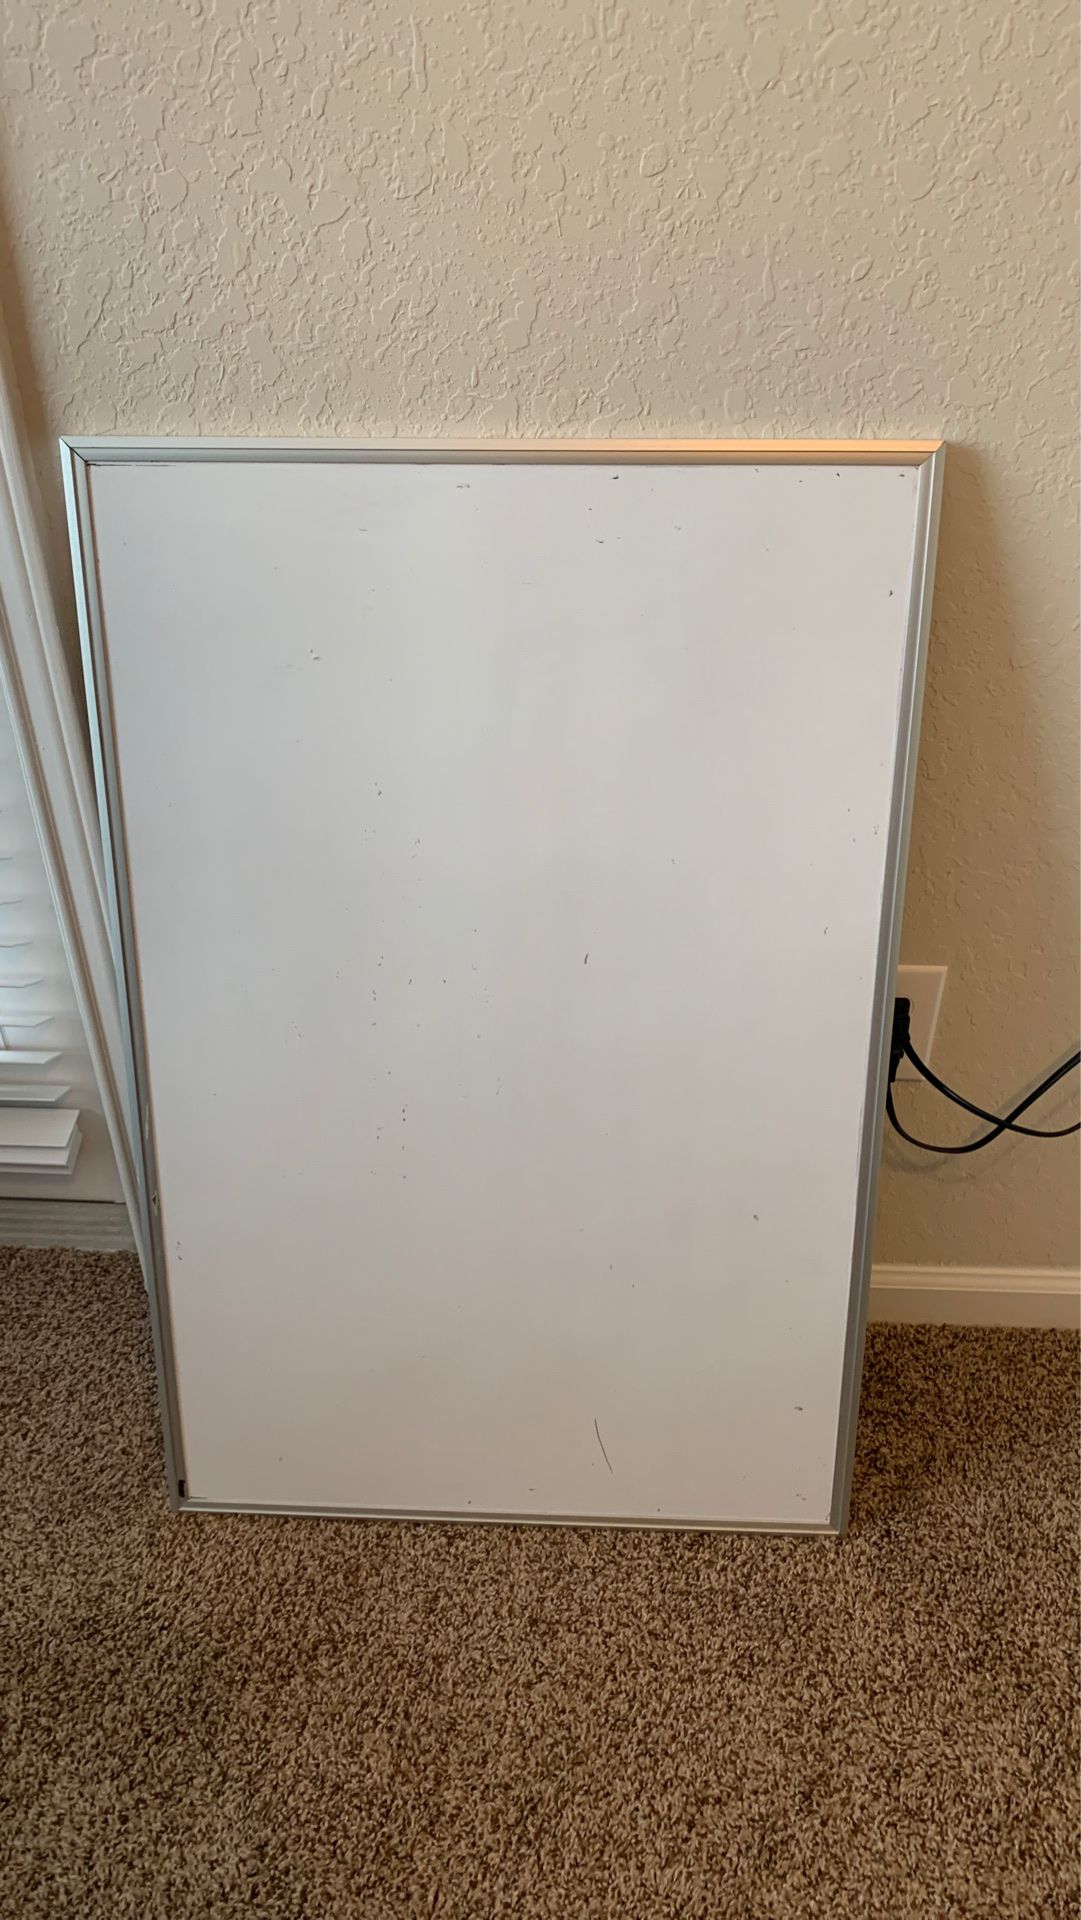 2x3 white board